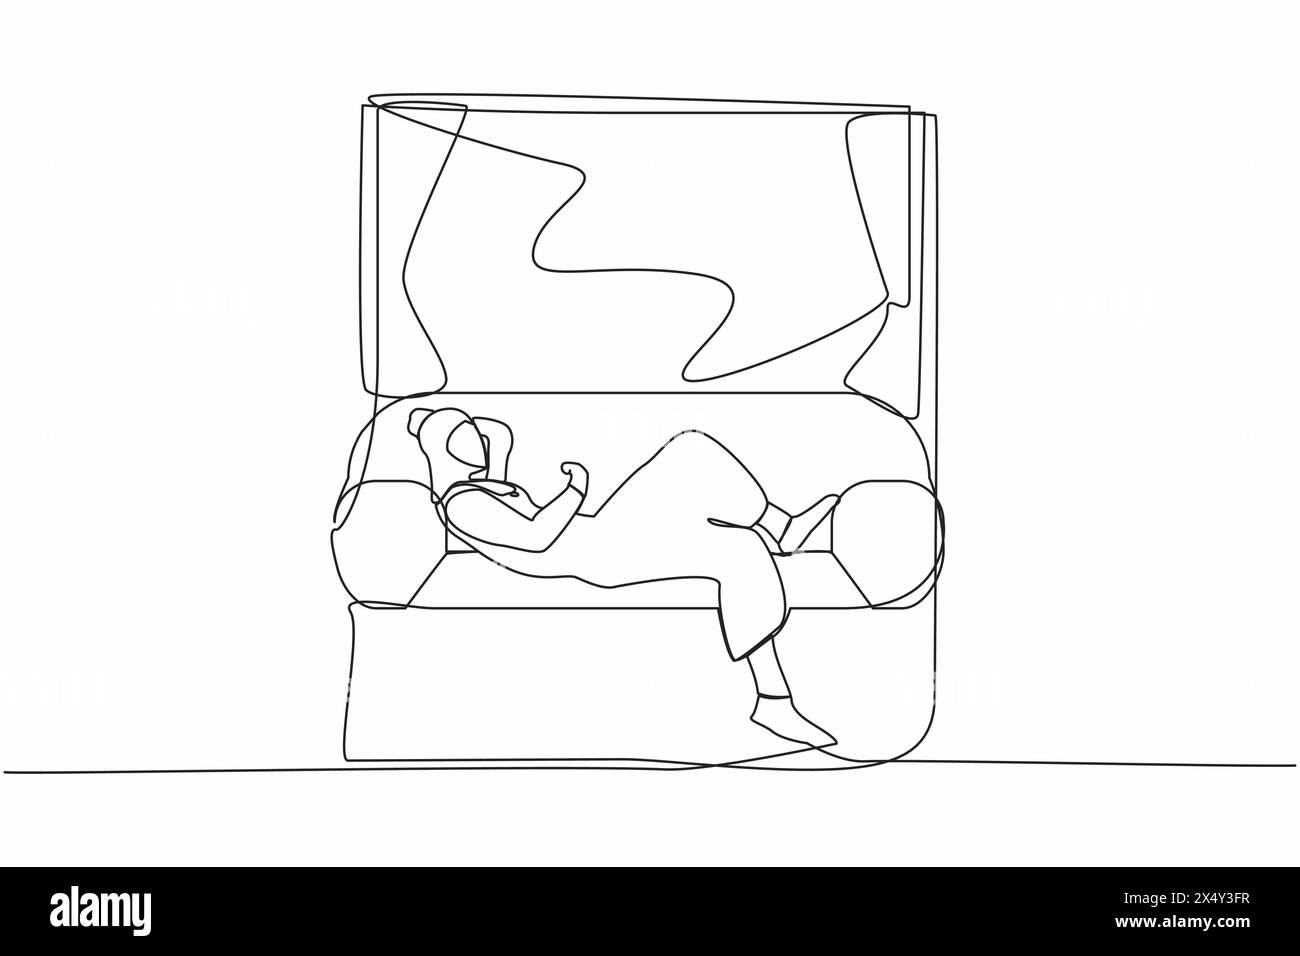 Eine durchgehende Linie, die junge arabische Frau auf dem Sofa in der Nähe der Fensterbank zeigt. Frau ruht in einem Zimmer in der Nähe des Fensters. Zeit zu Hause zu verbringen, achtern zu entspannen Stock Vektor